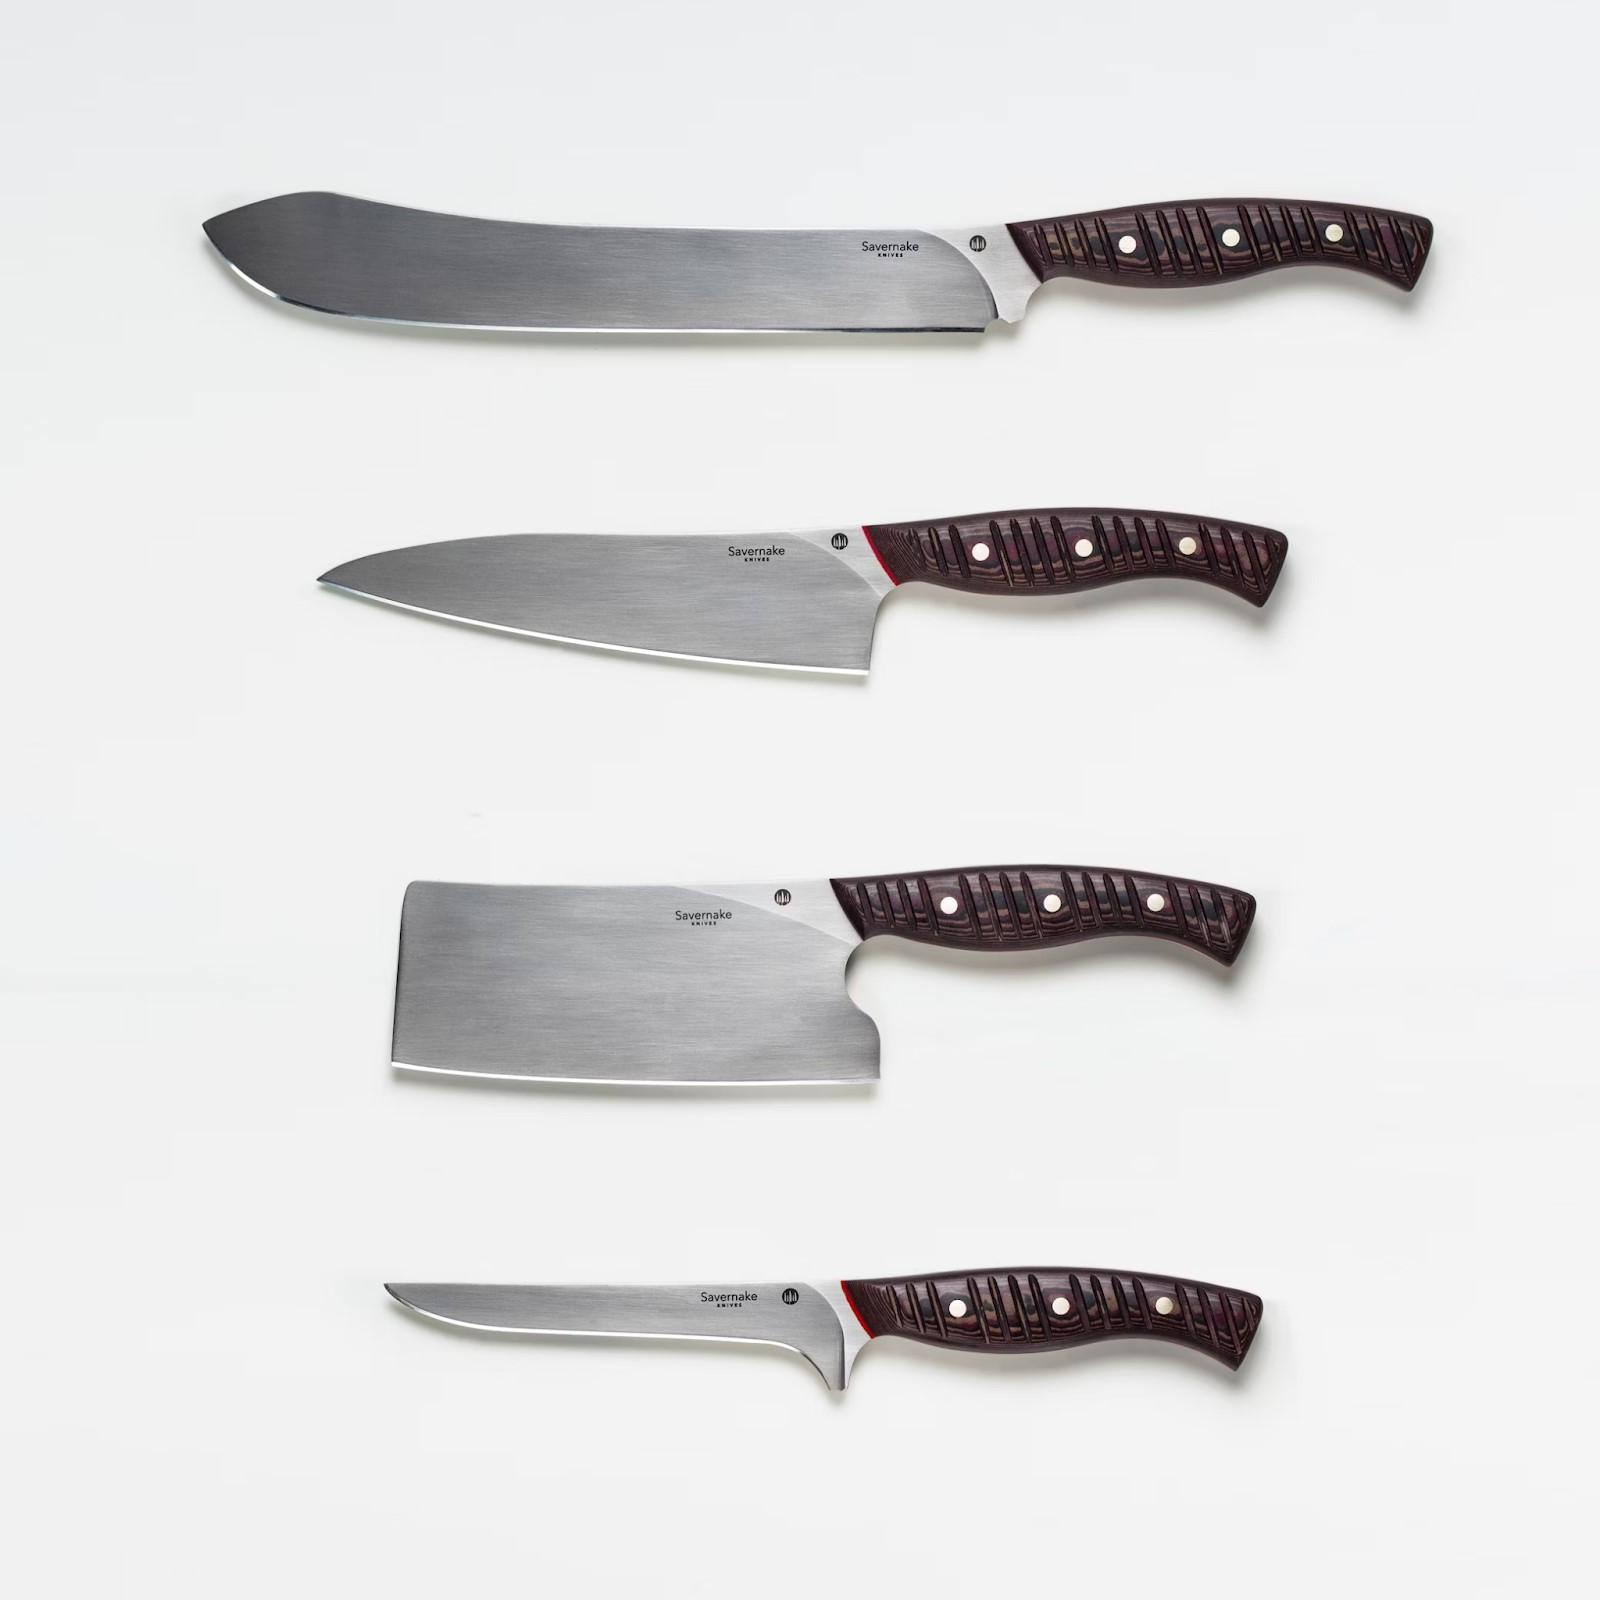 Butchers knives